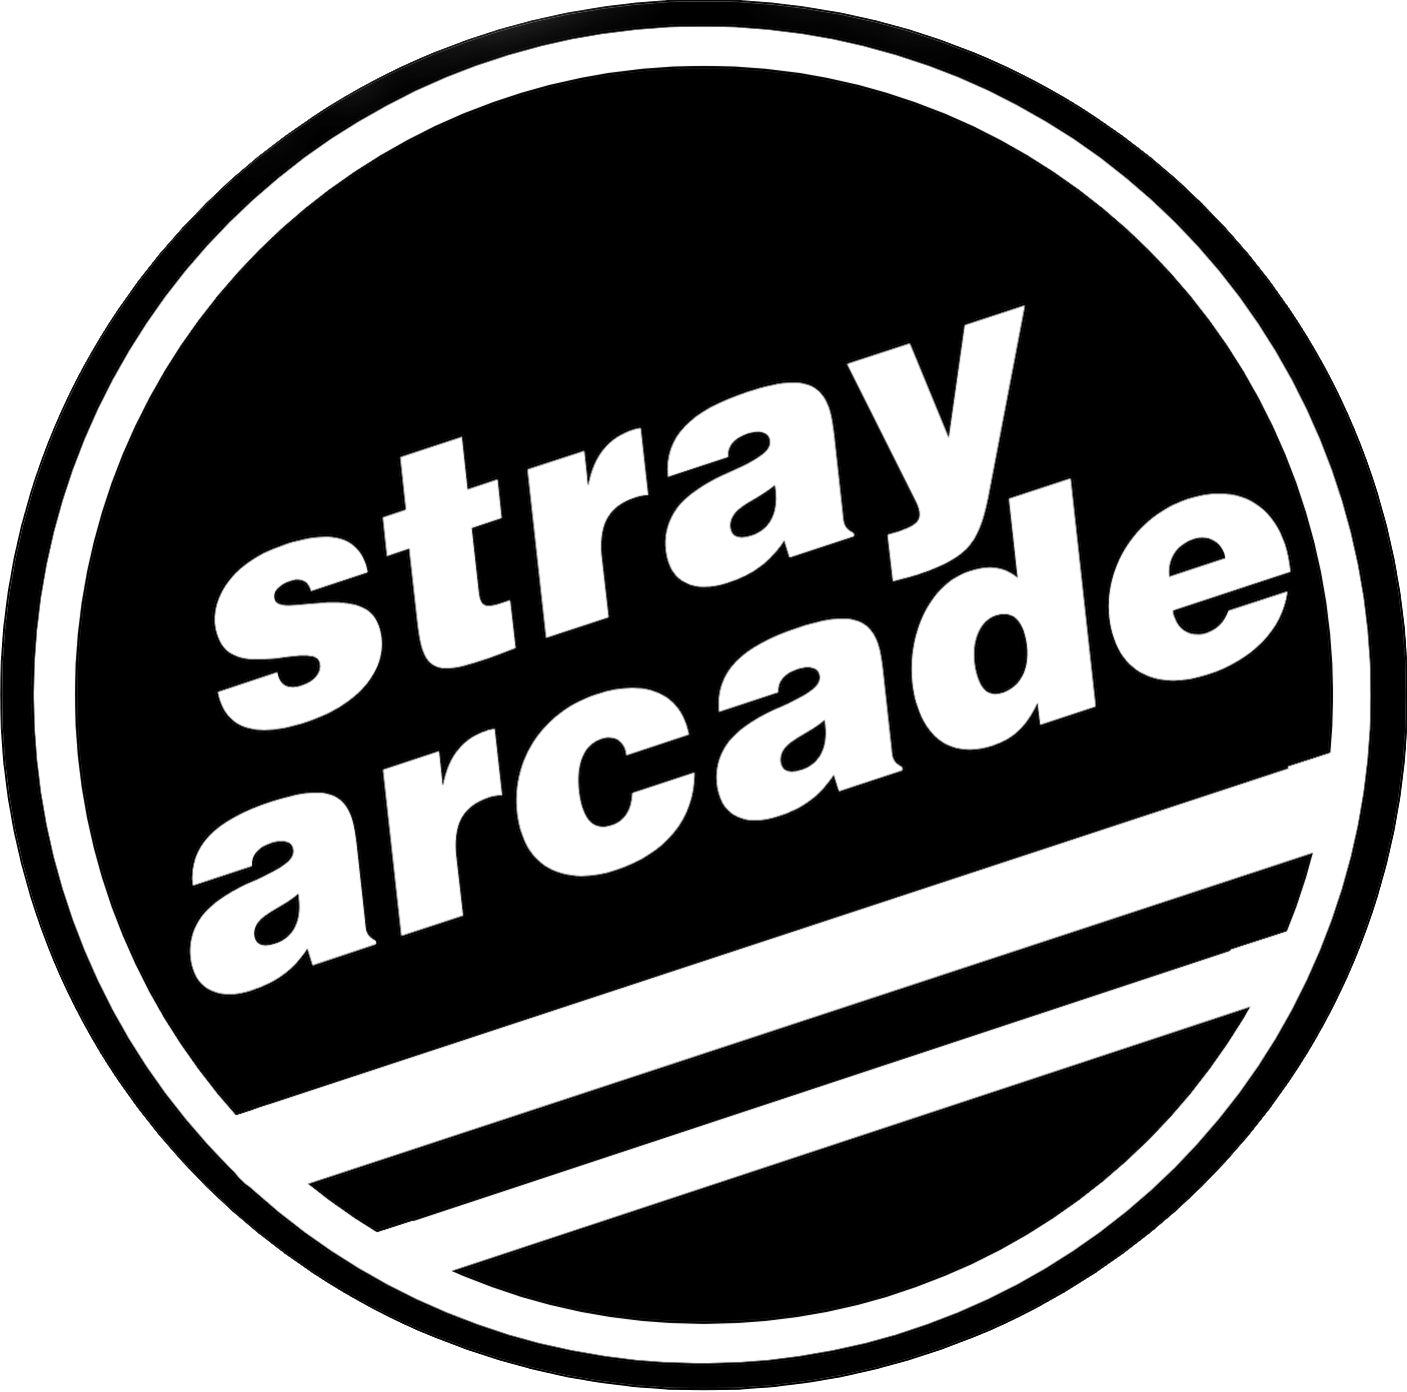 Stray Arcade